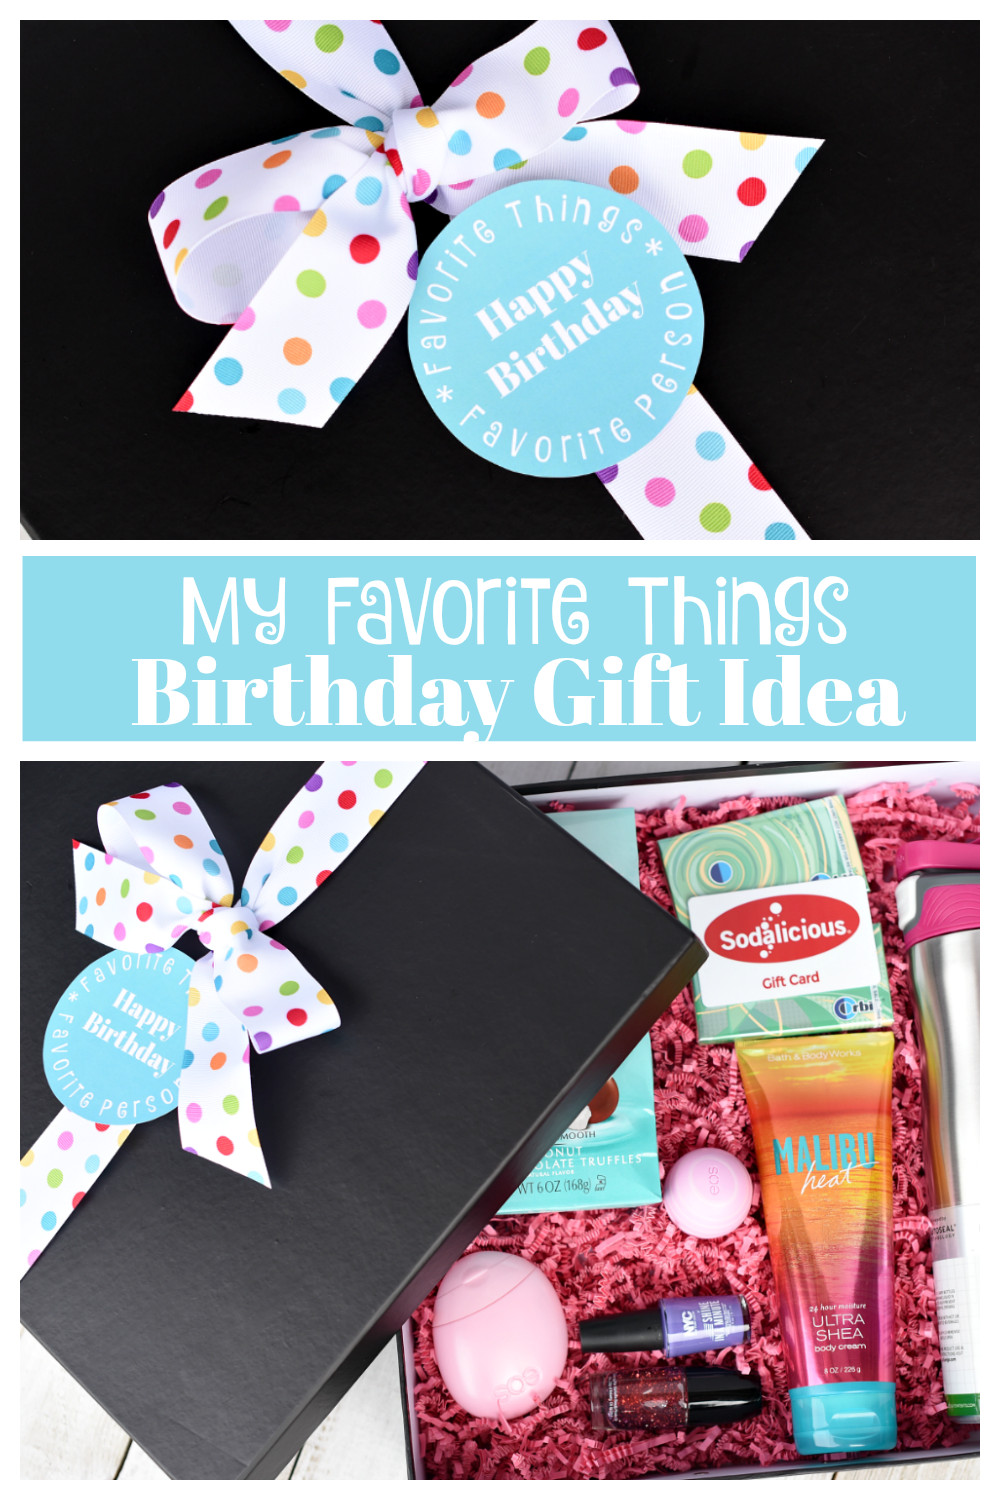 Creative Birthday Gift Ideas For Best Friend
 My Favorite Things Birthday Gifts for Your Best Friend